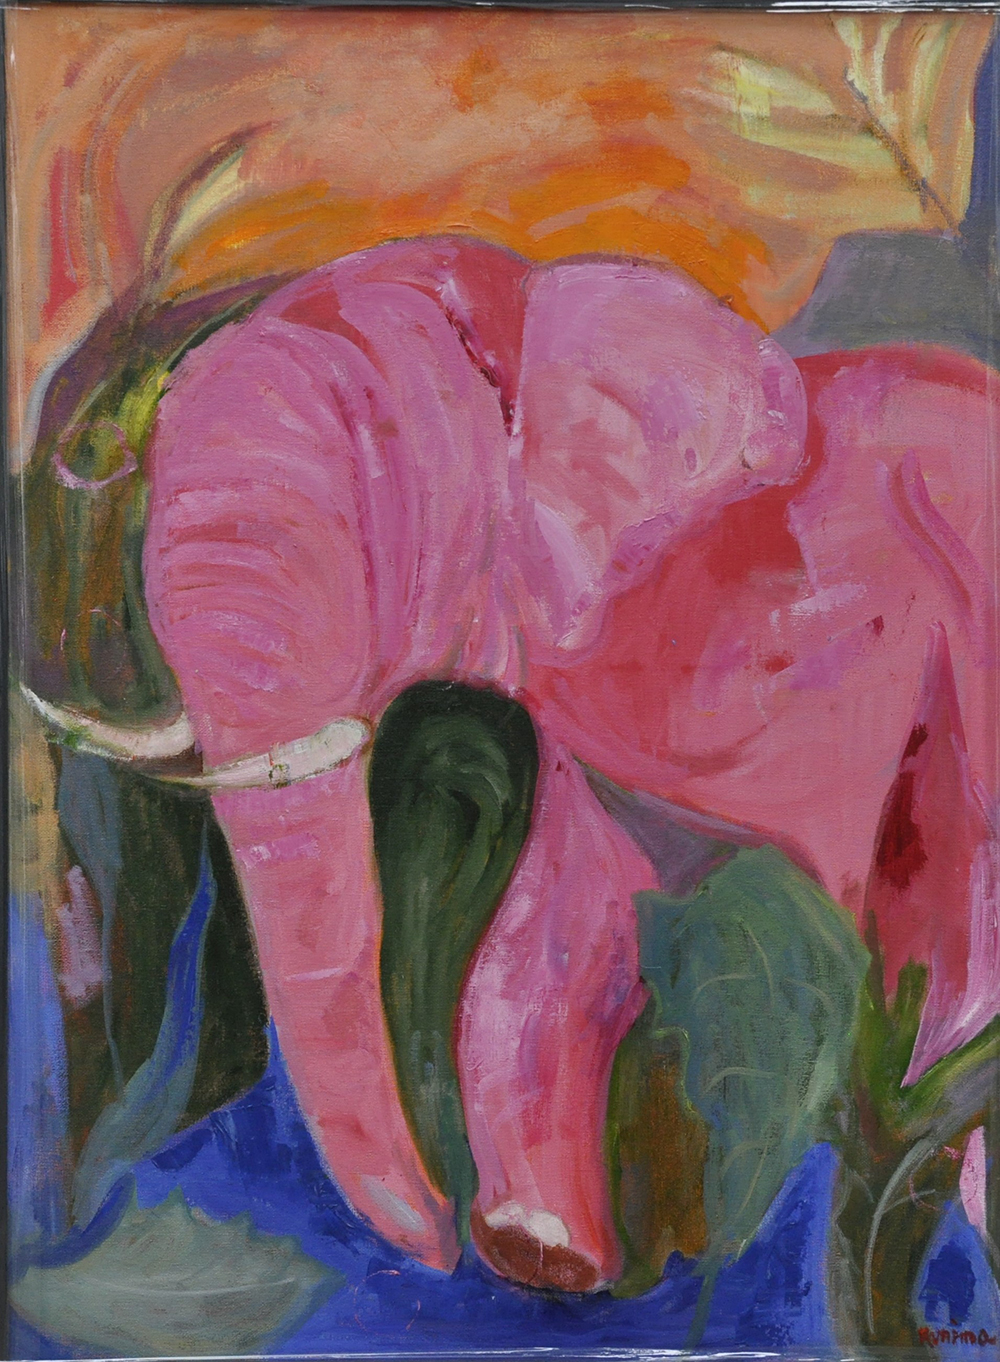 Fools paradise, a pink elephant